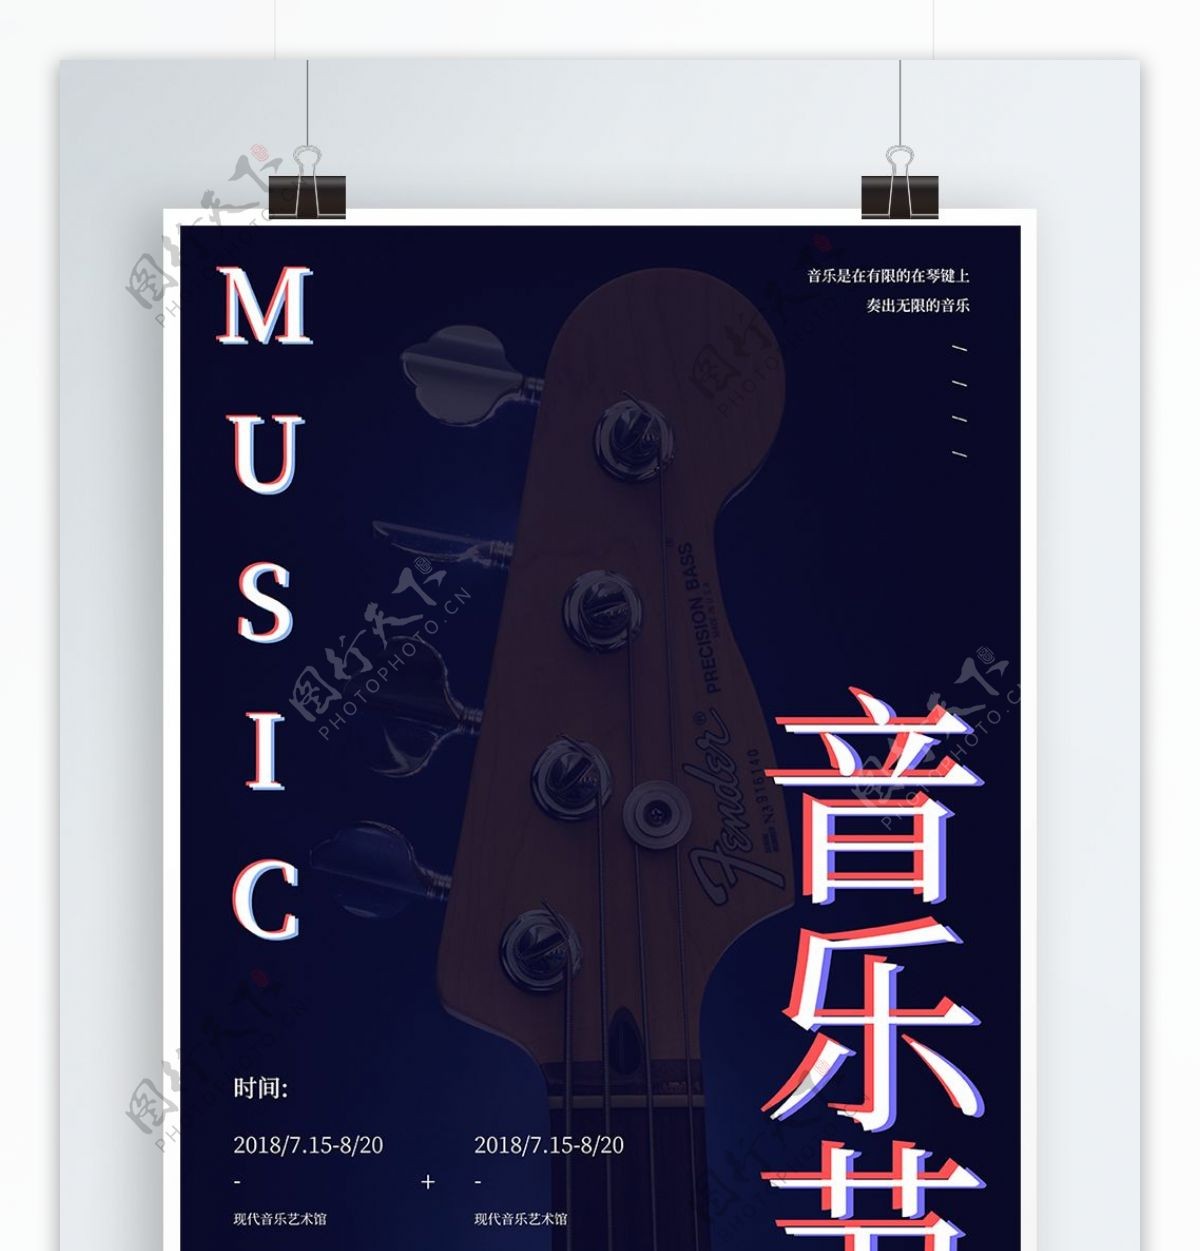 创意音乐节节日宣传海报